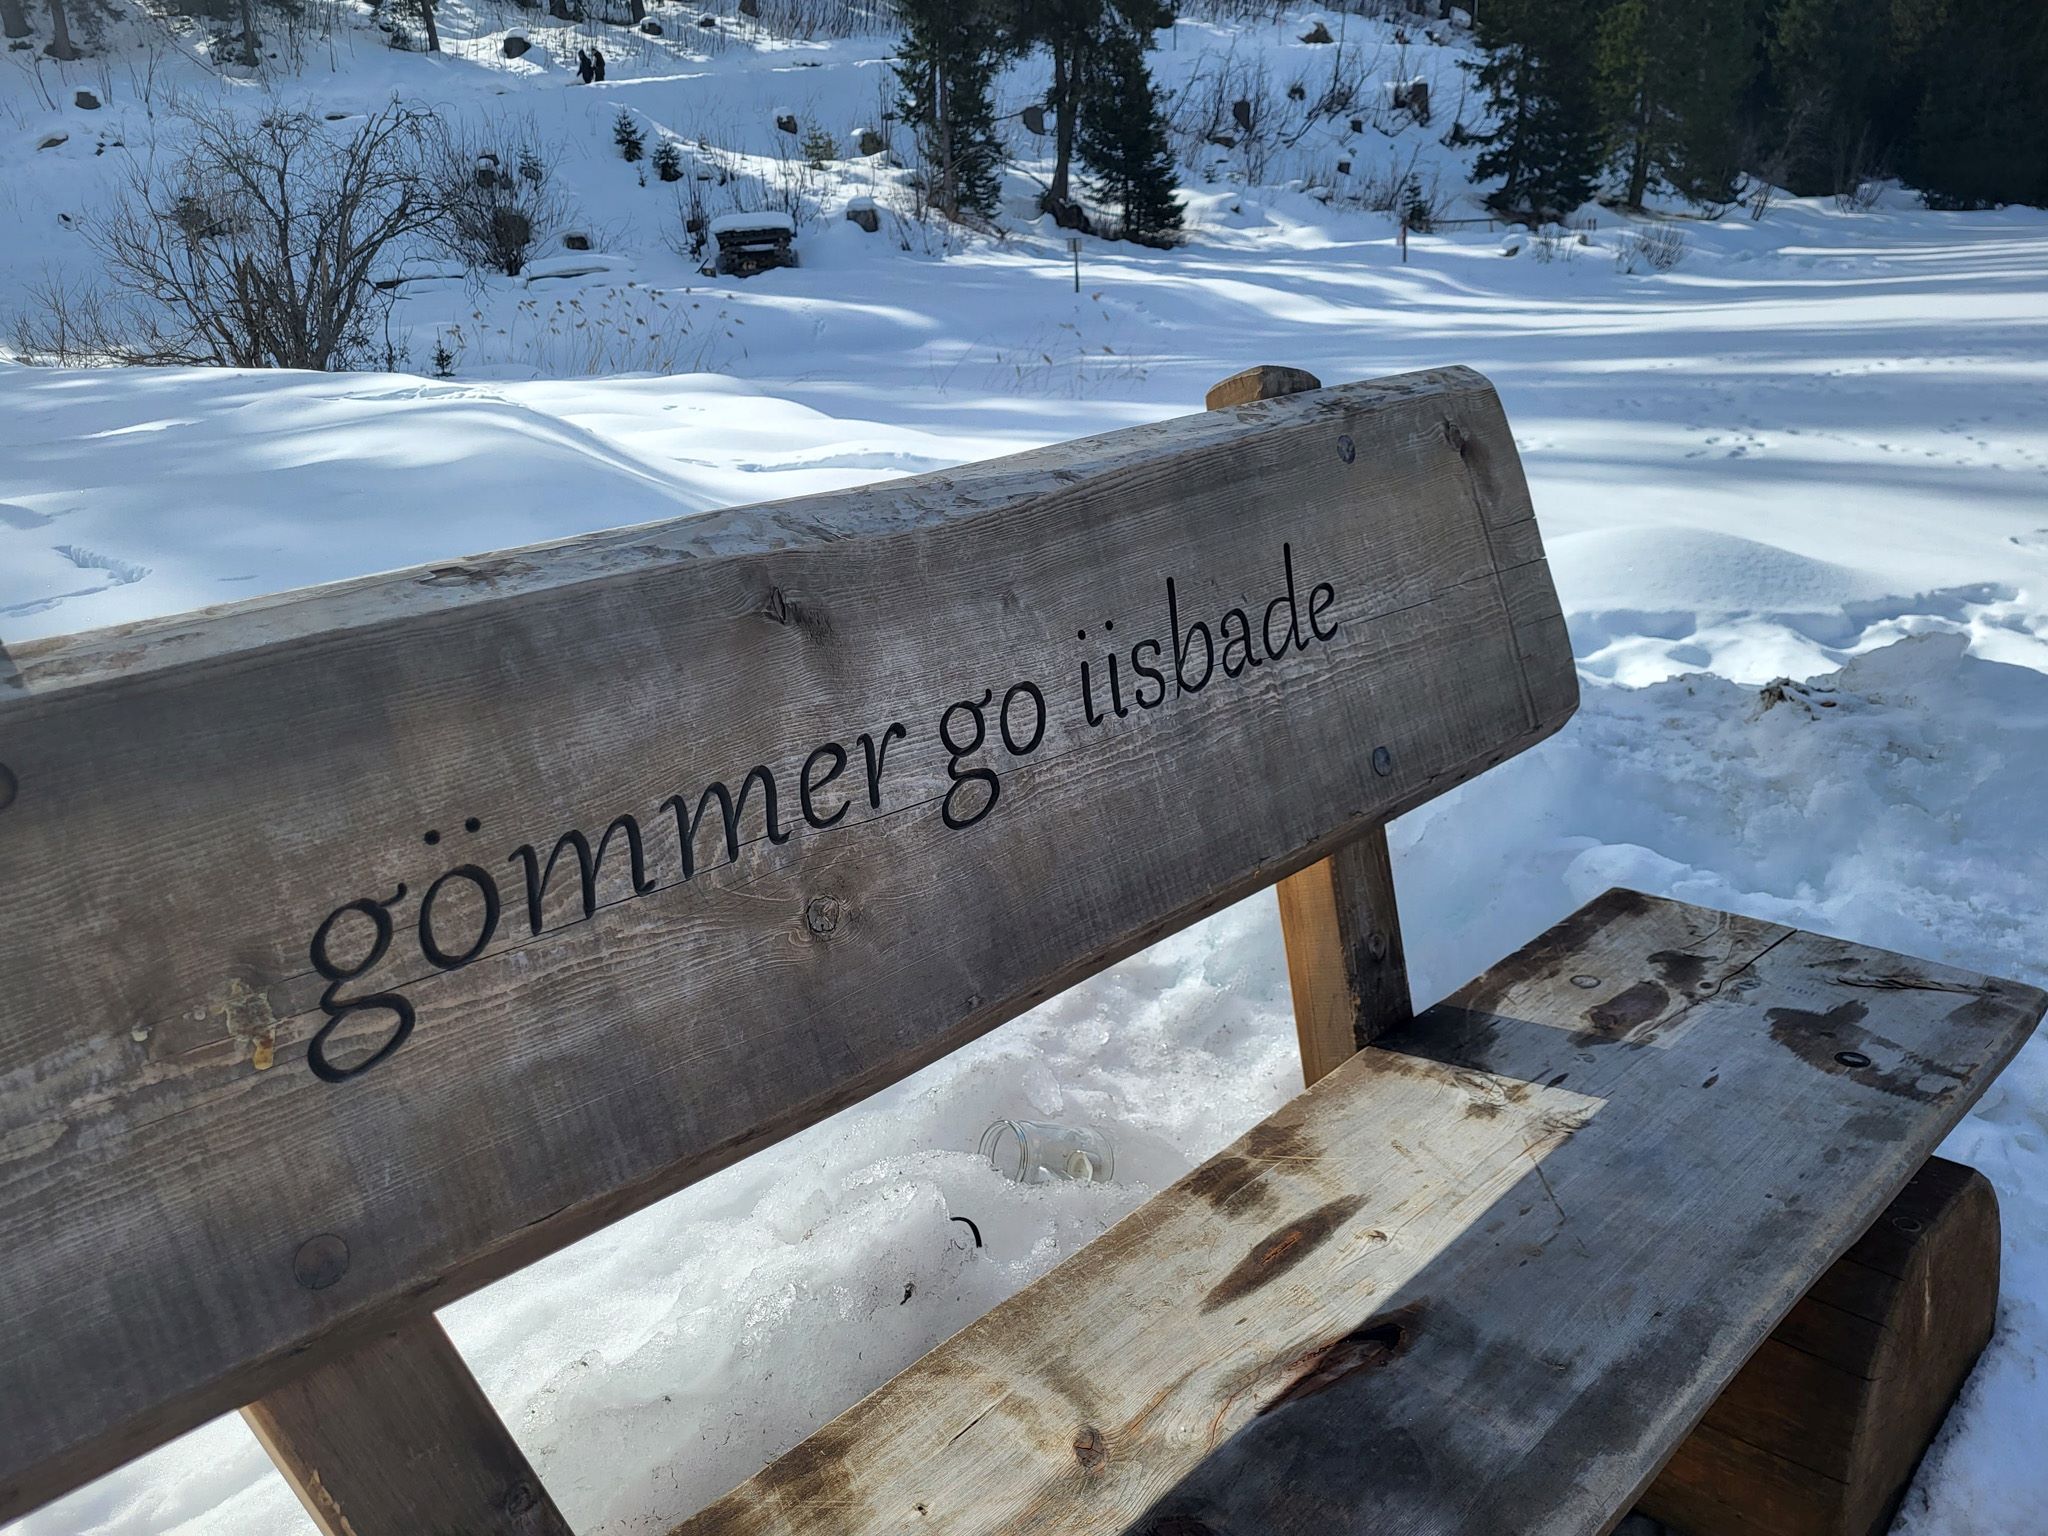 Sitzband aus Holz auf der "Gömmer go iisbade" geschrieben ist.